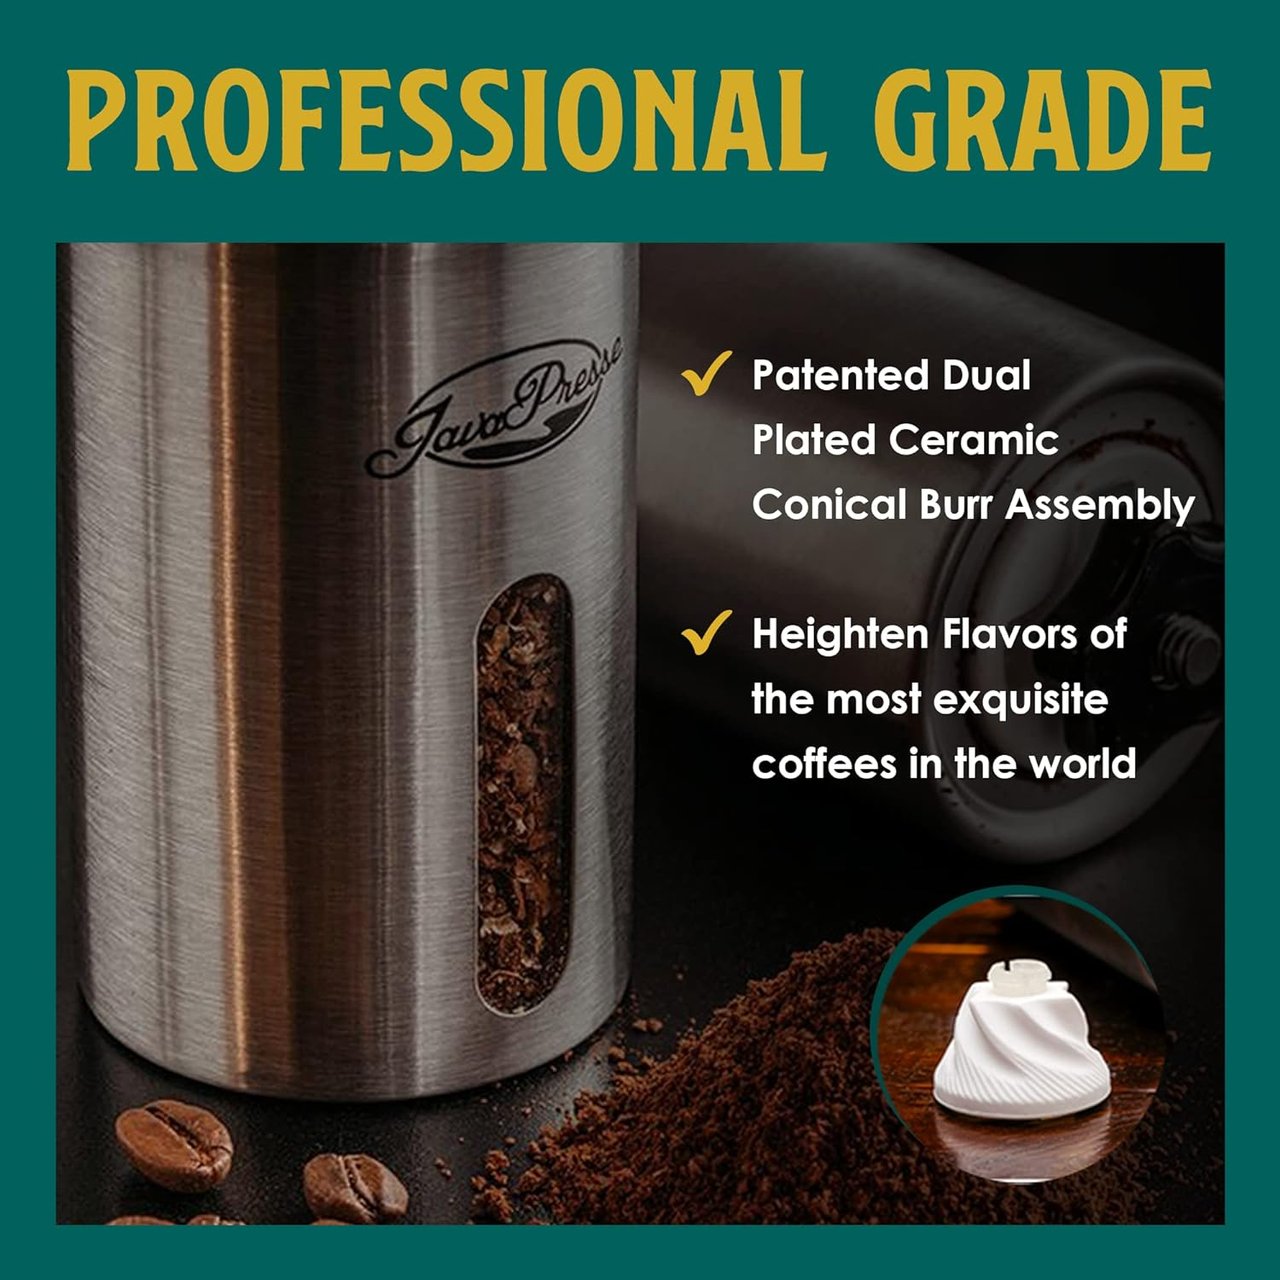 1 JavaPresse Stainless Steel Manual Coffee Grinder